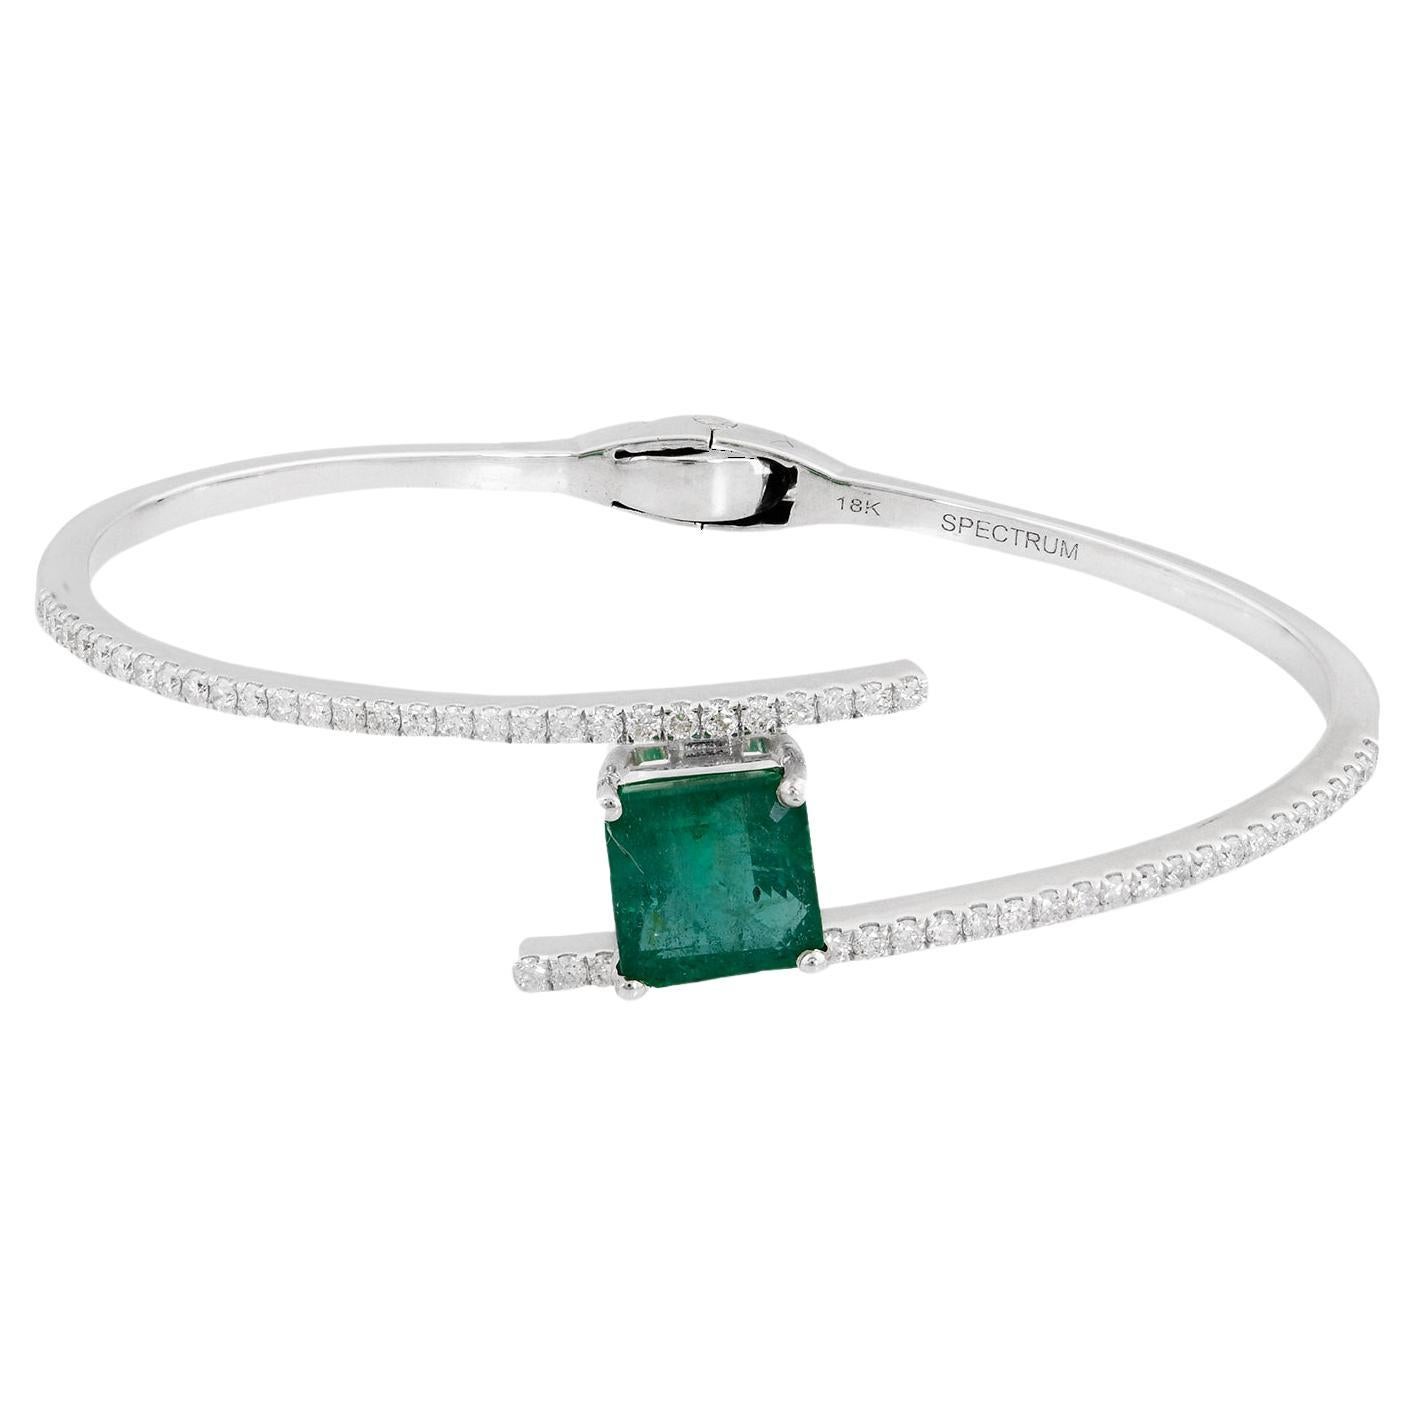 Zambian Emerald Gemstone Bangle Diamond Bracelet 18 Karat White Gold Jewelry